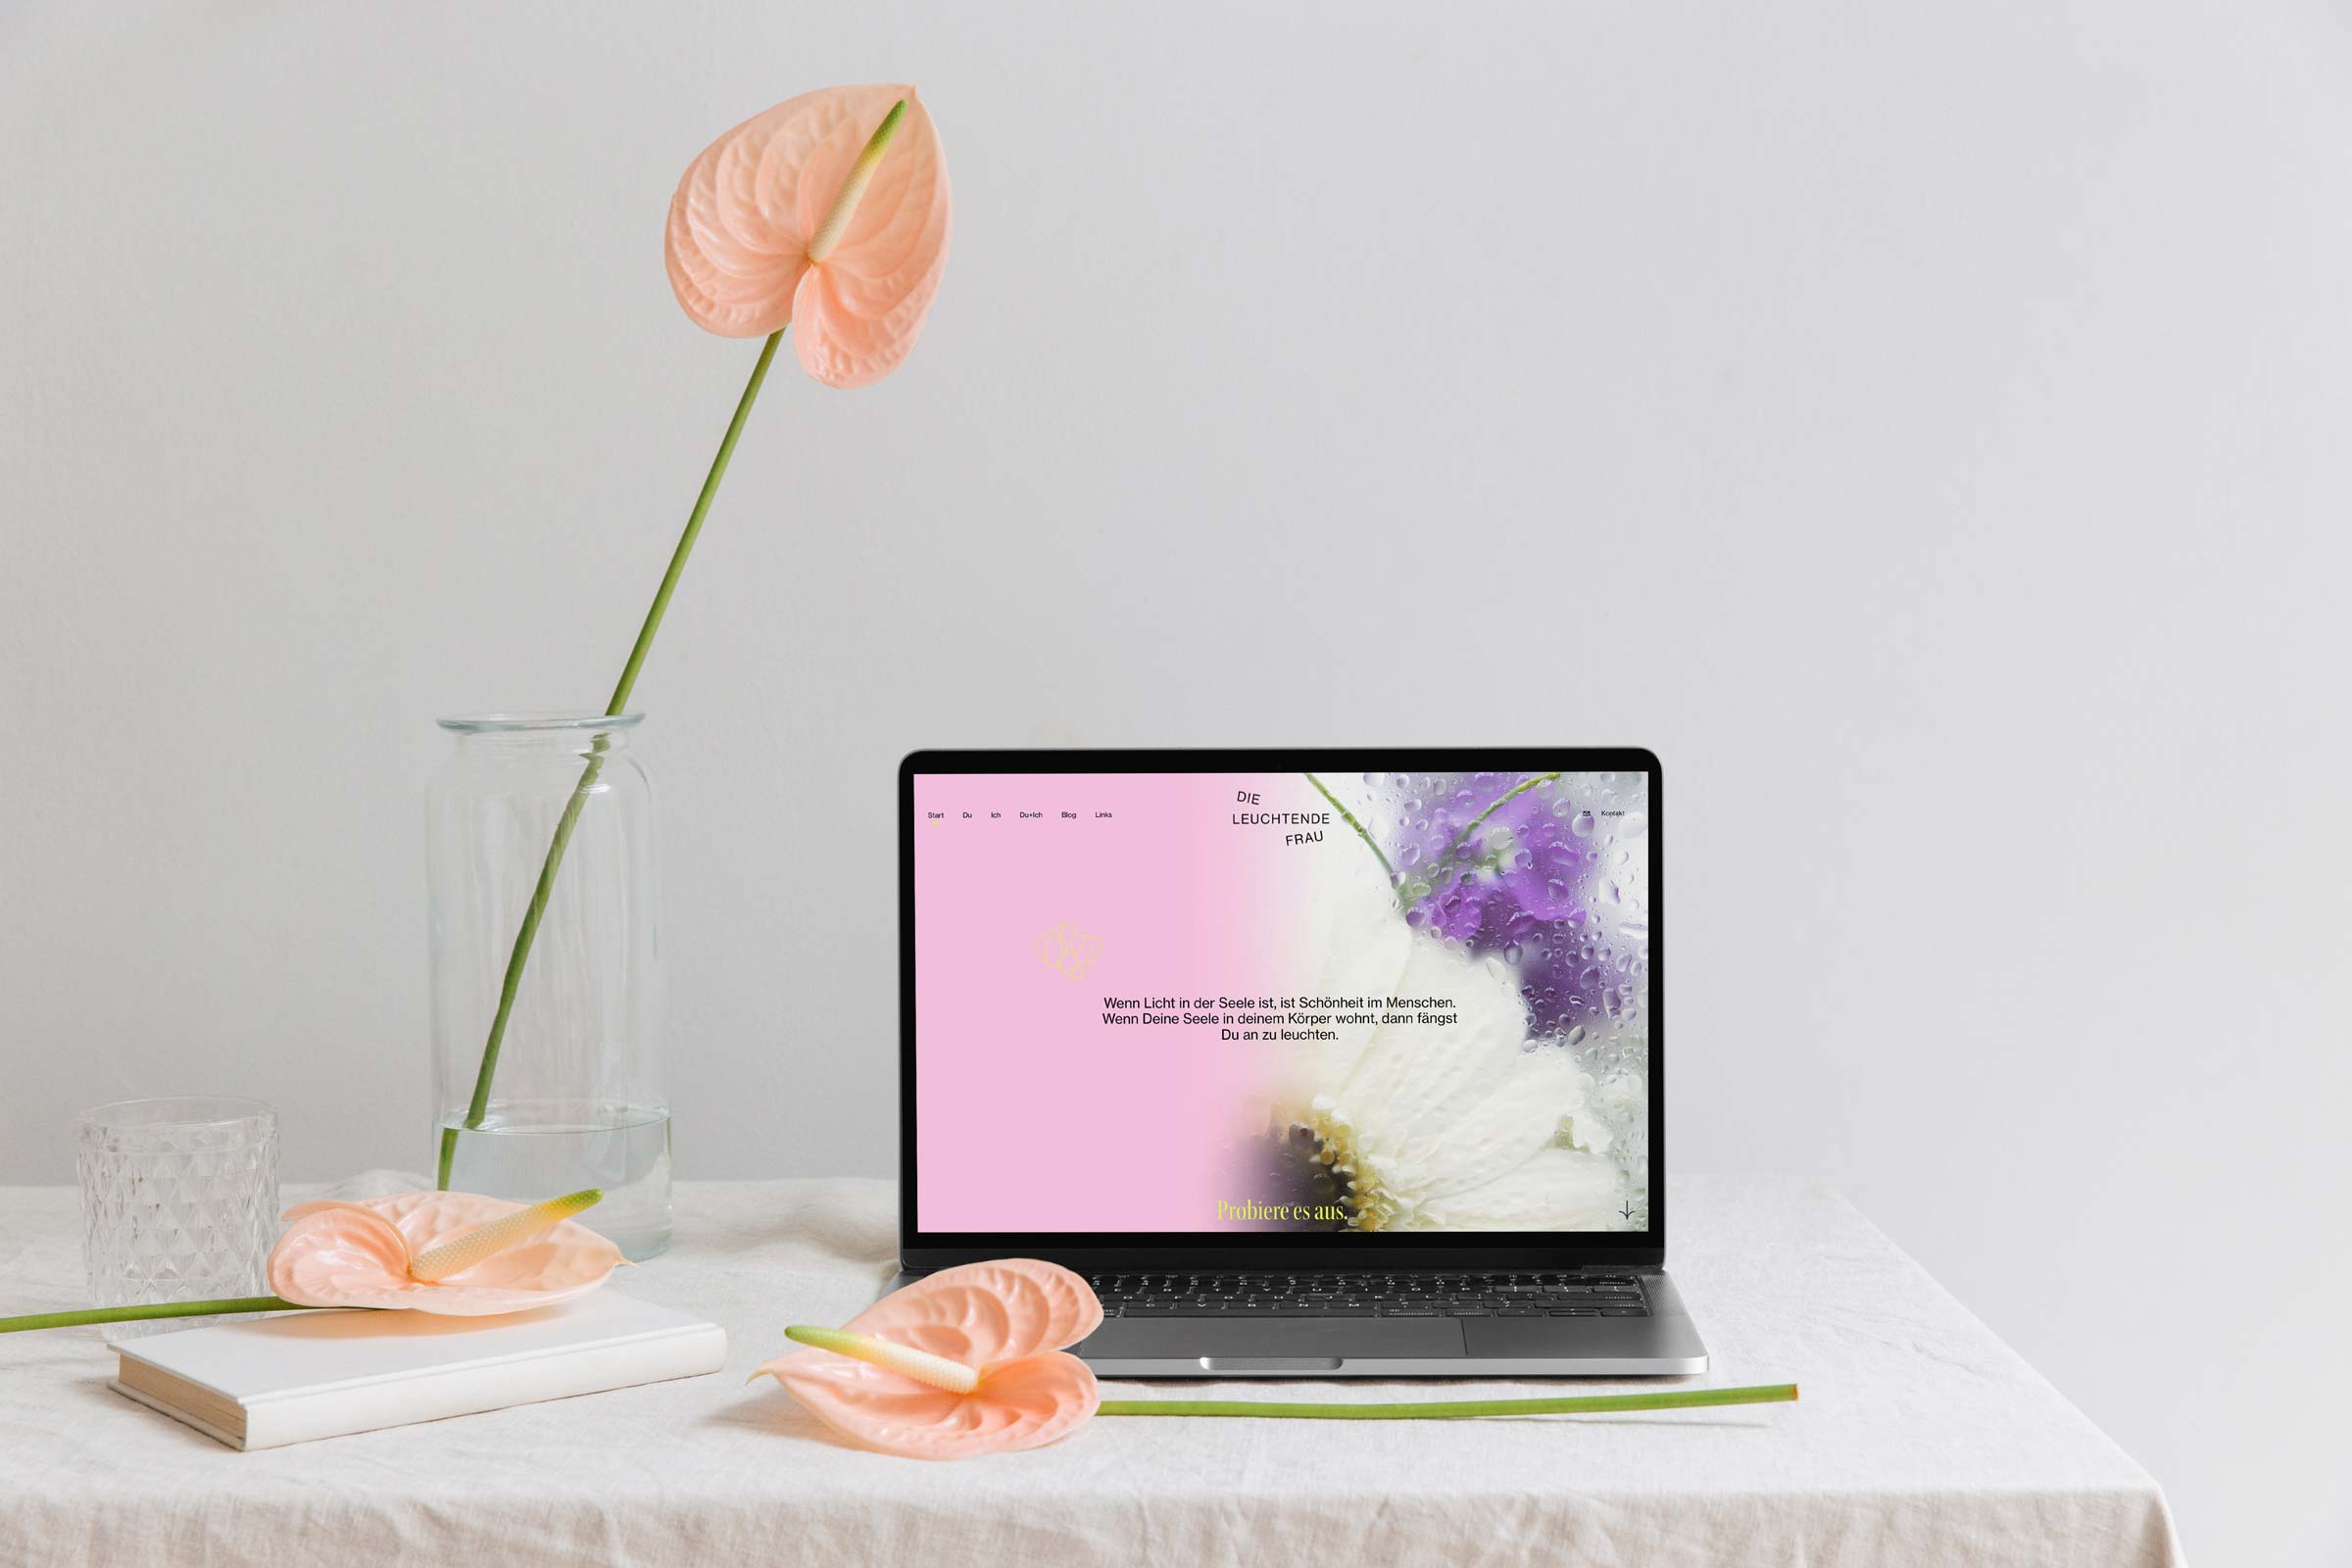 Die Leuchtende Frau – Brand Identity by Mindt Design Studio – Webdesign